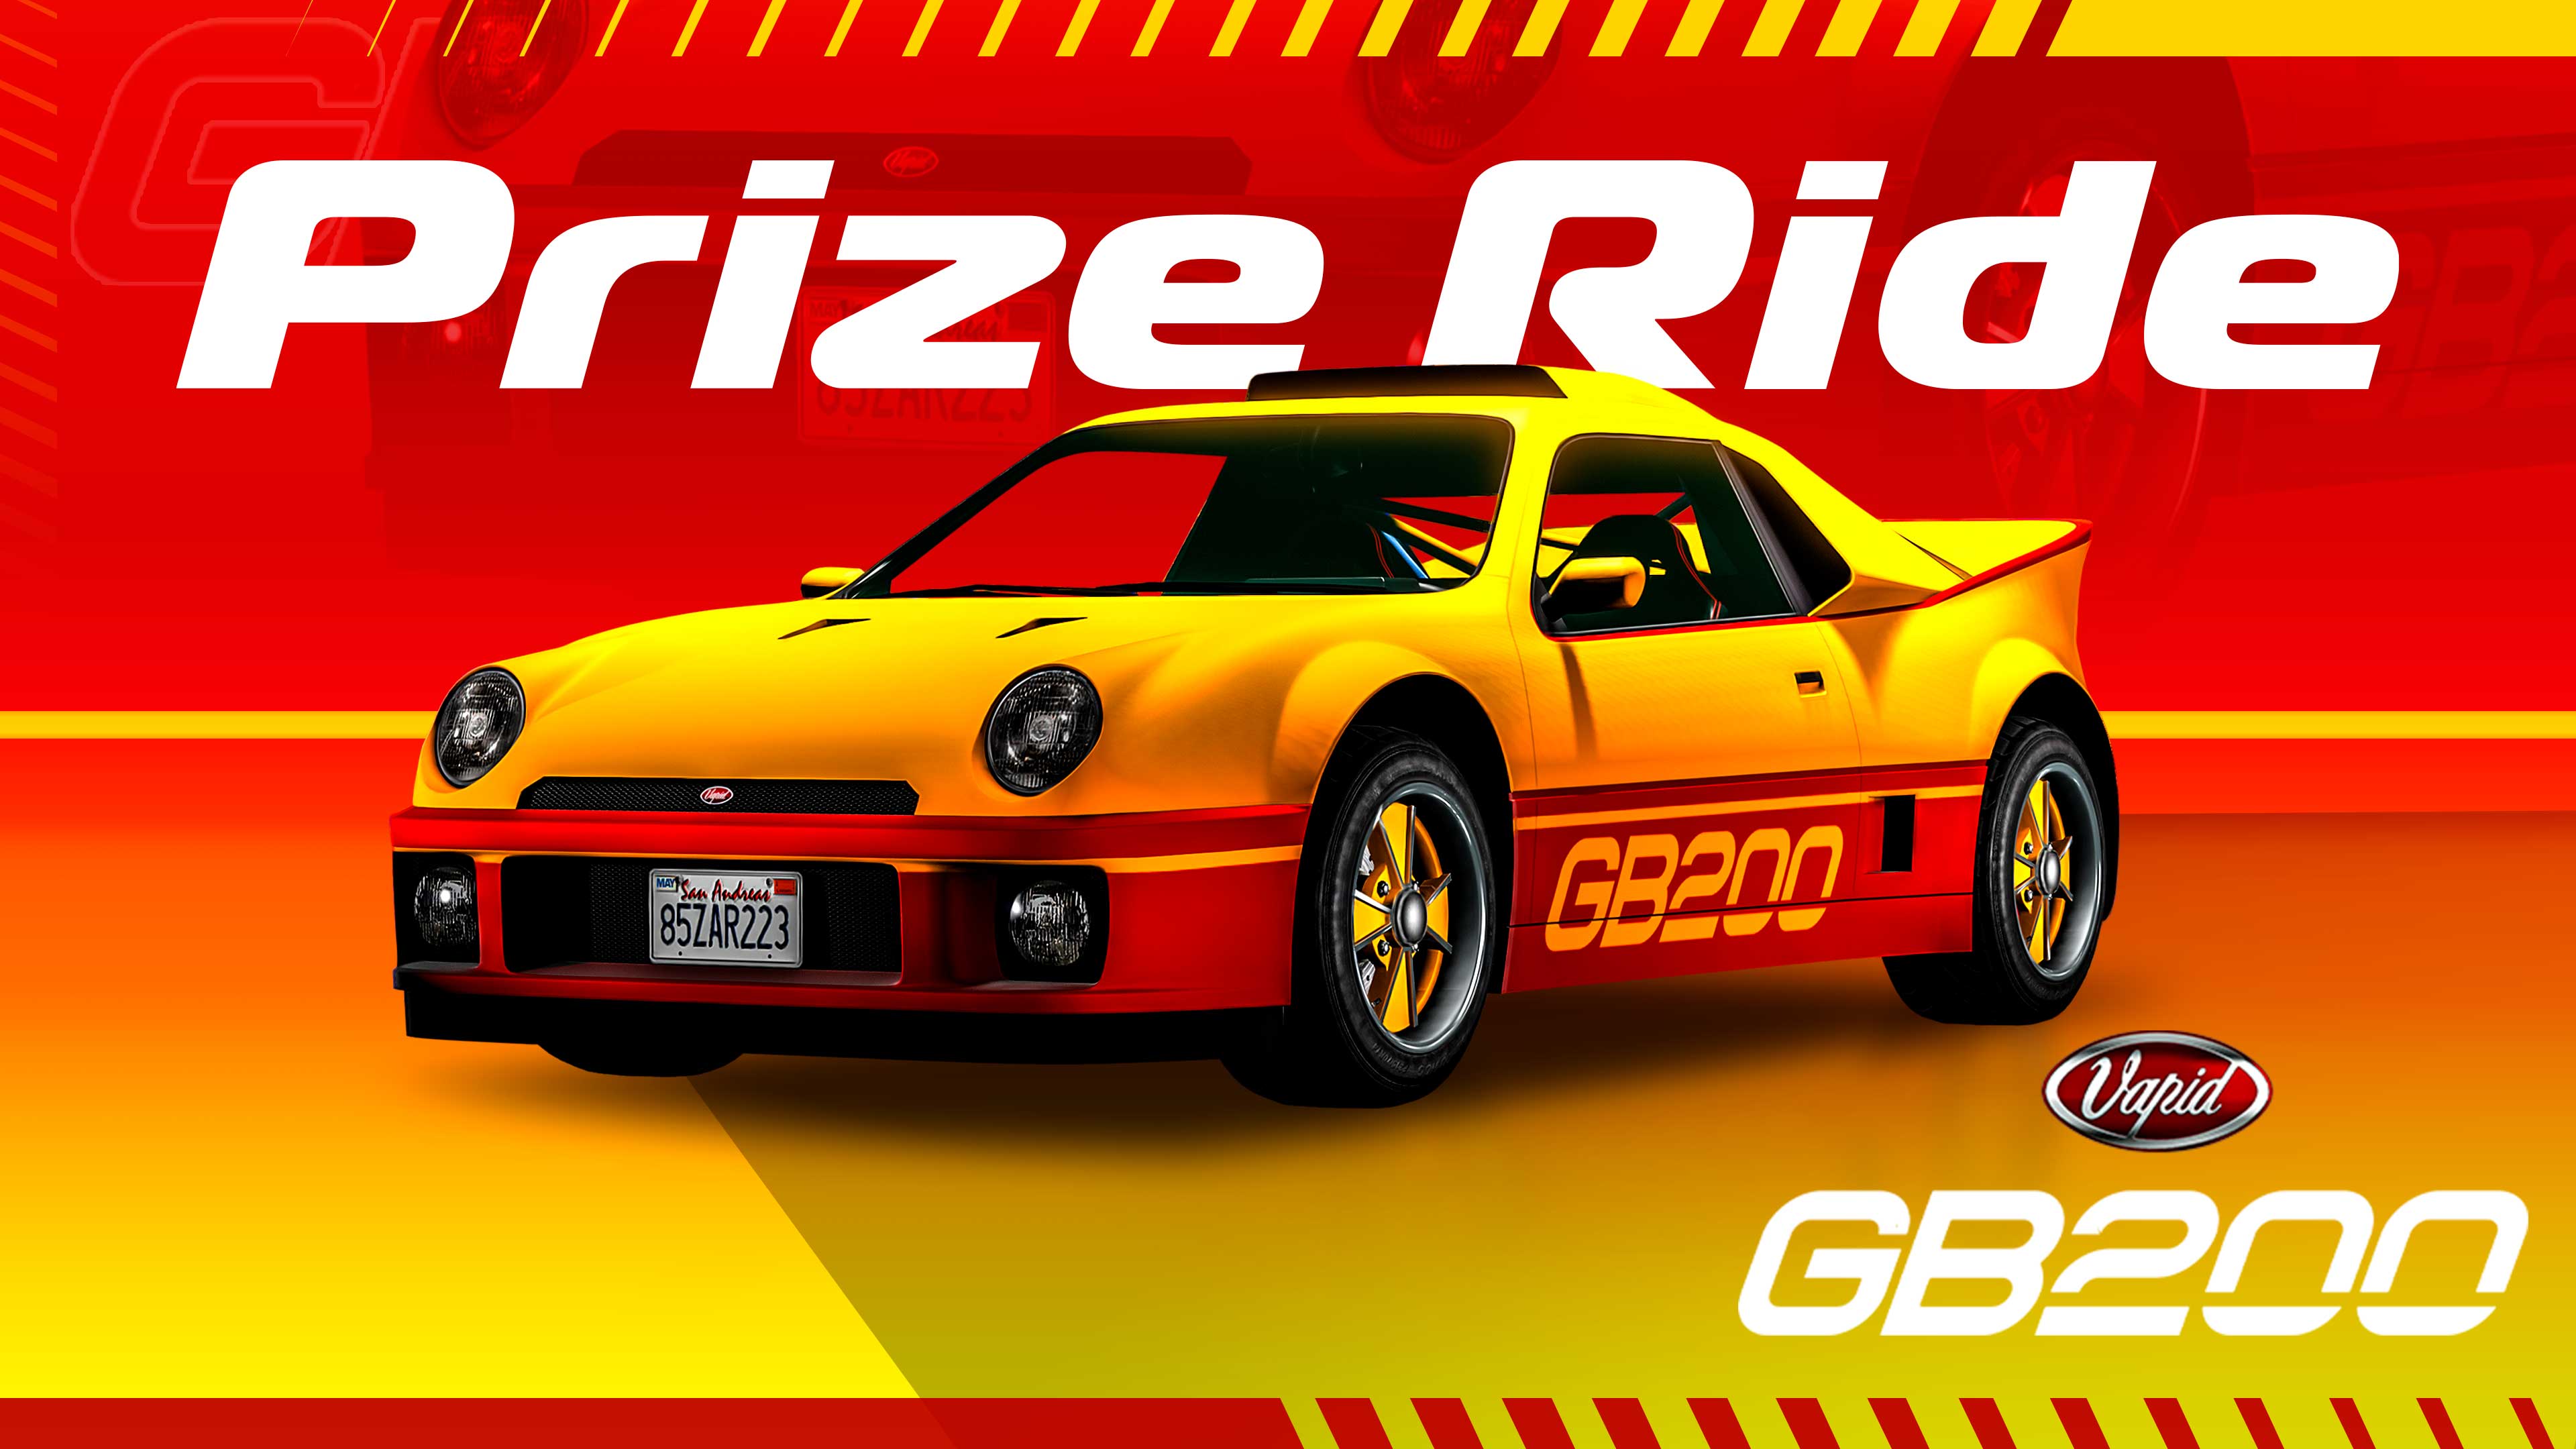 GTA Online Los Santos Tuners Prize Ride: Vapid GB200